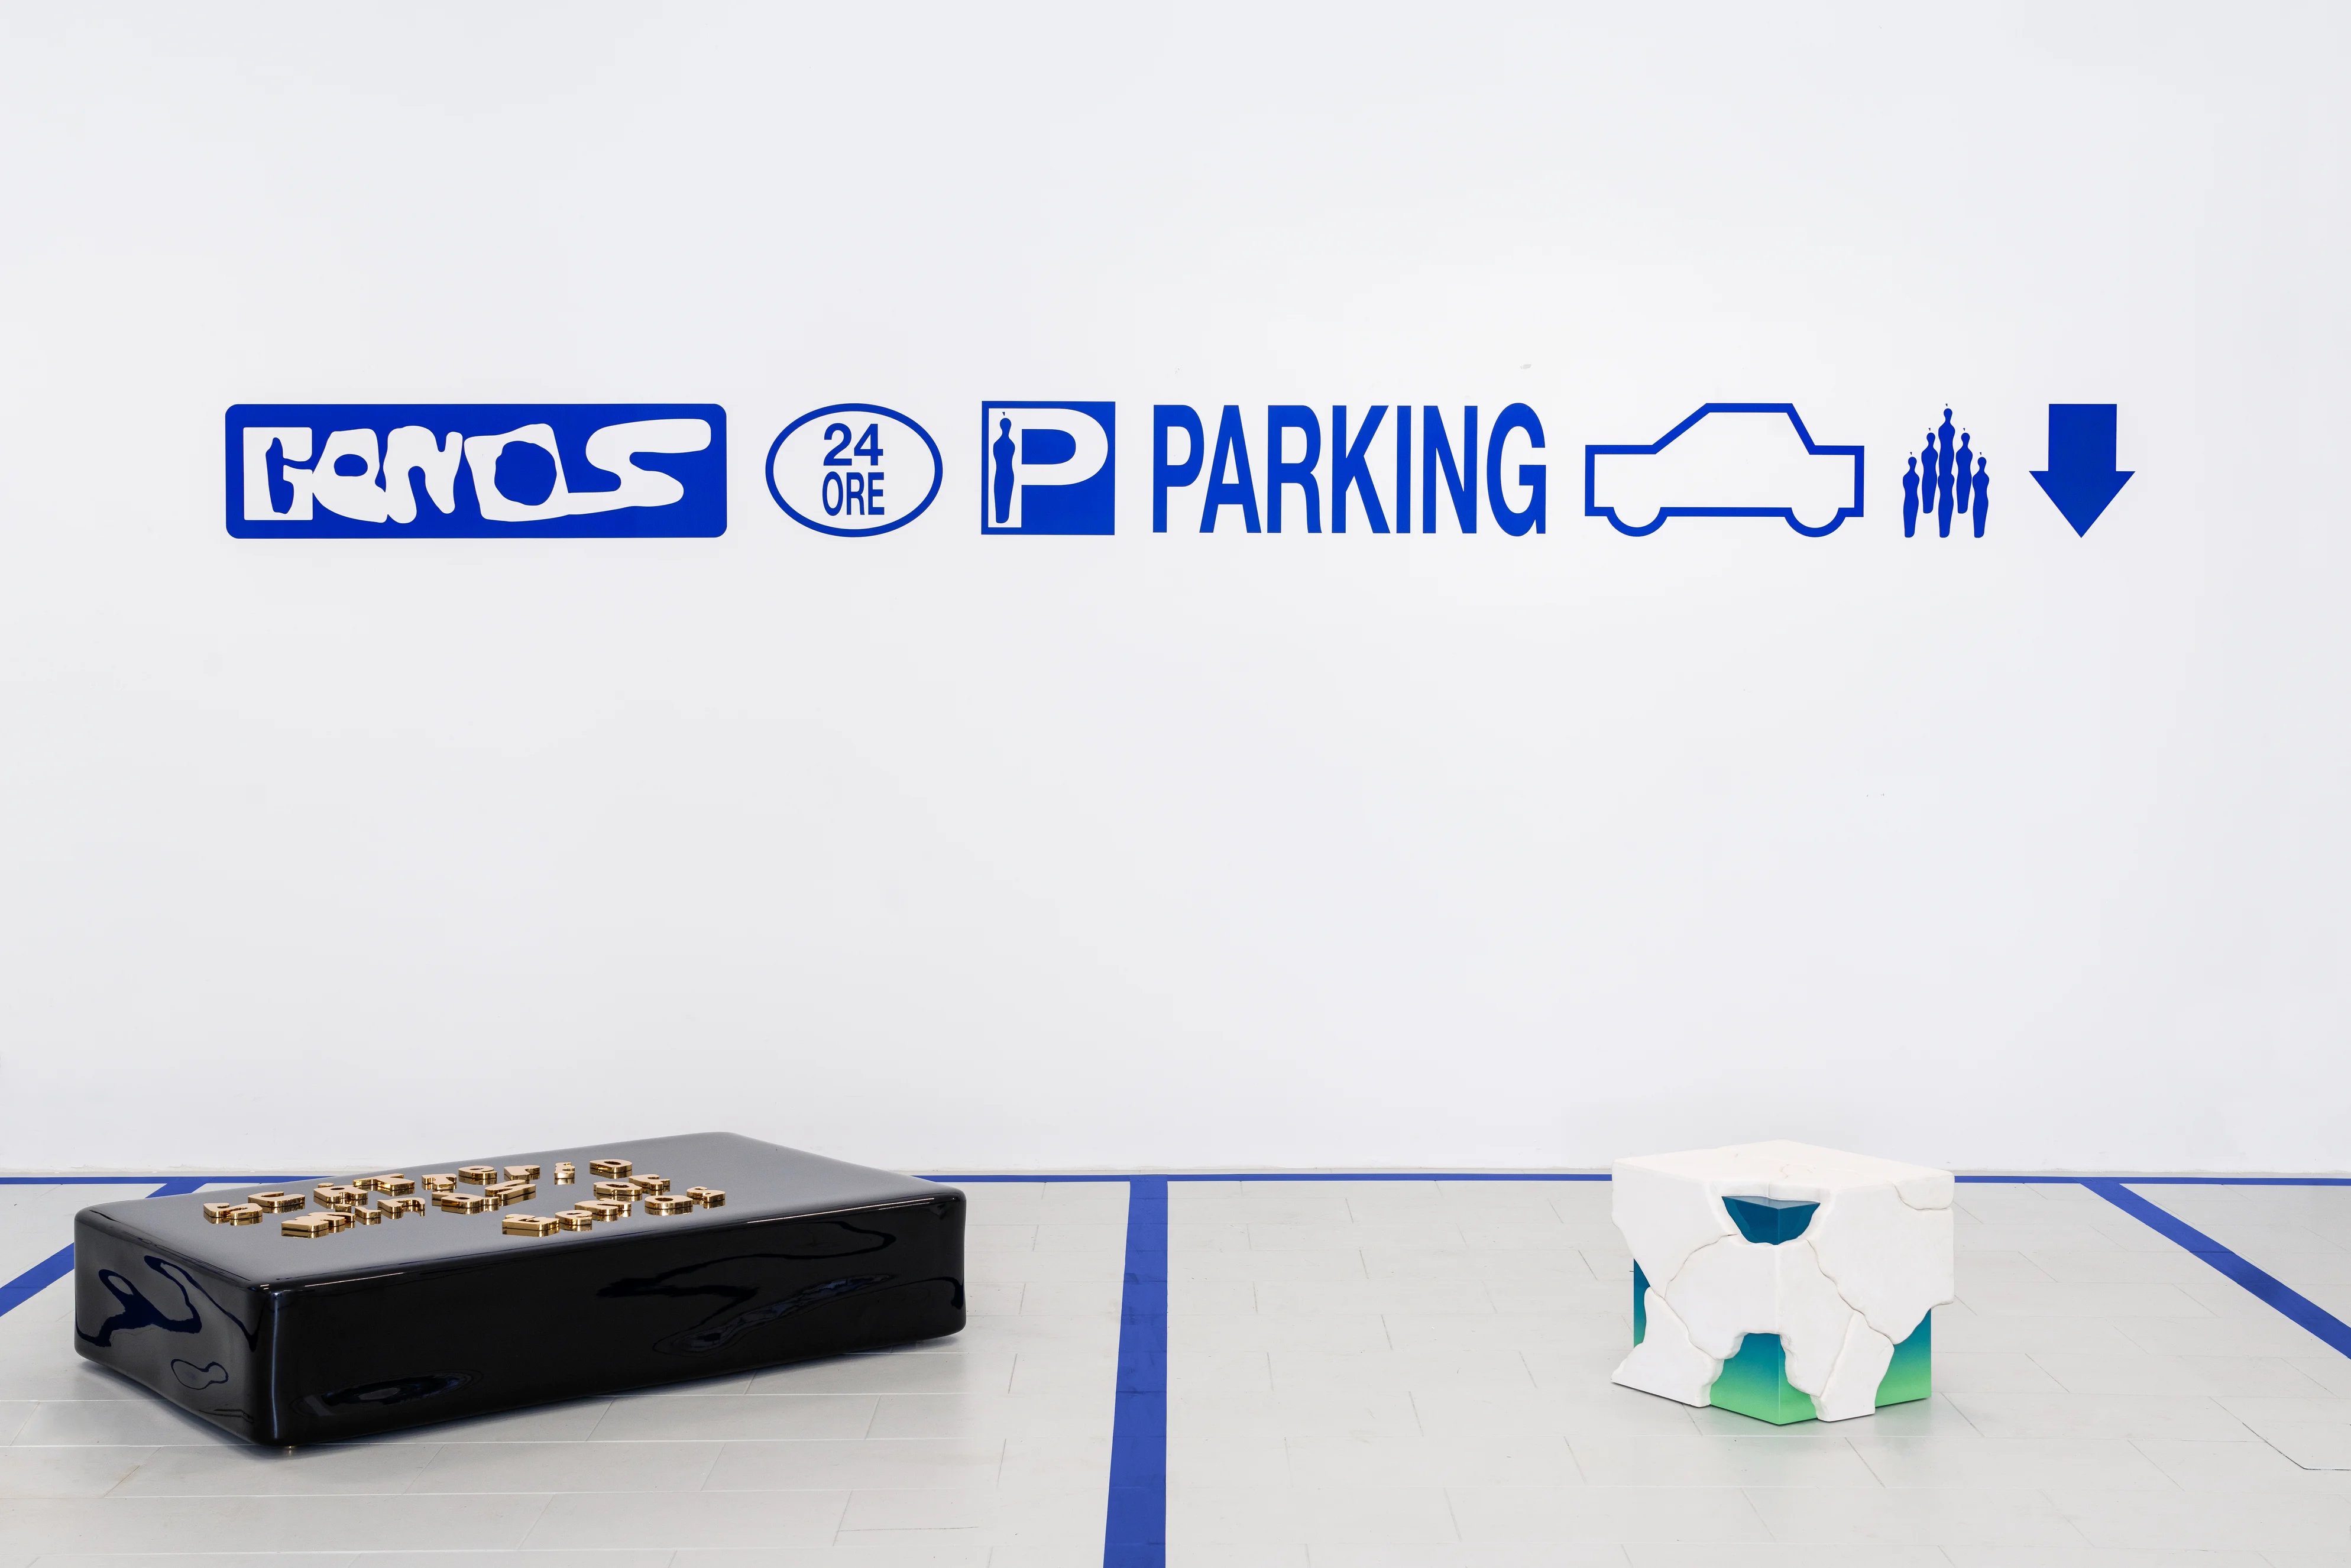 展場模仿停車場環境，貼上告示、展品如車子停泊在格子內。對於Monad 11來說，停車場目的明確，指示清晰，是獨特的地方。